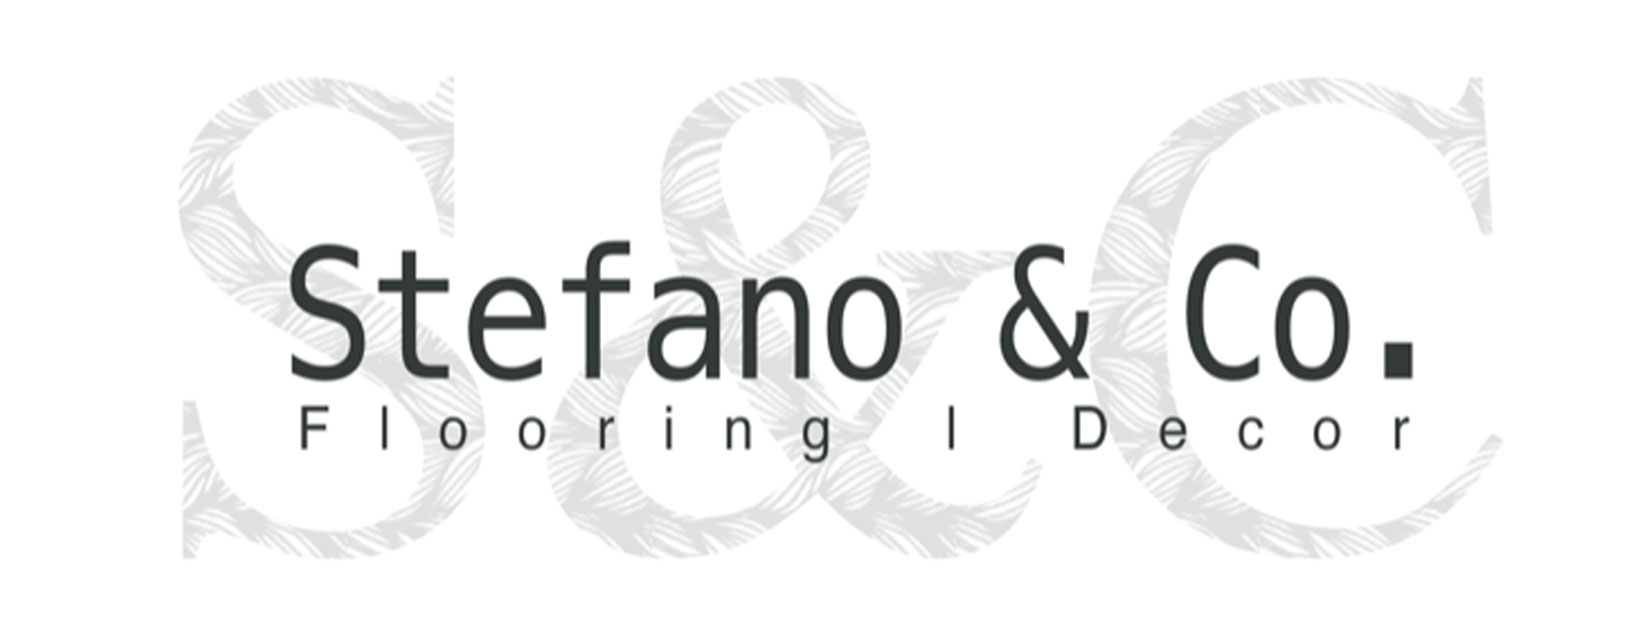 stefano-and-co-company-logo